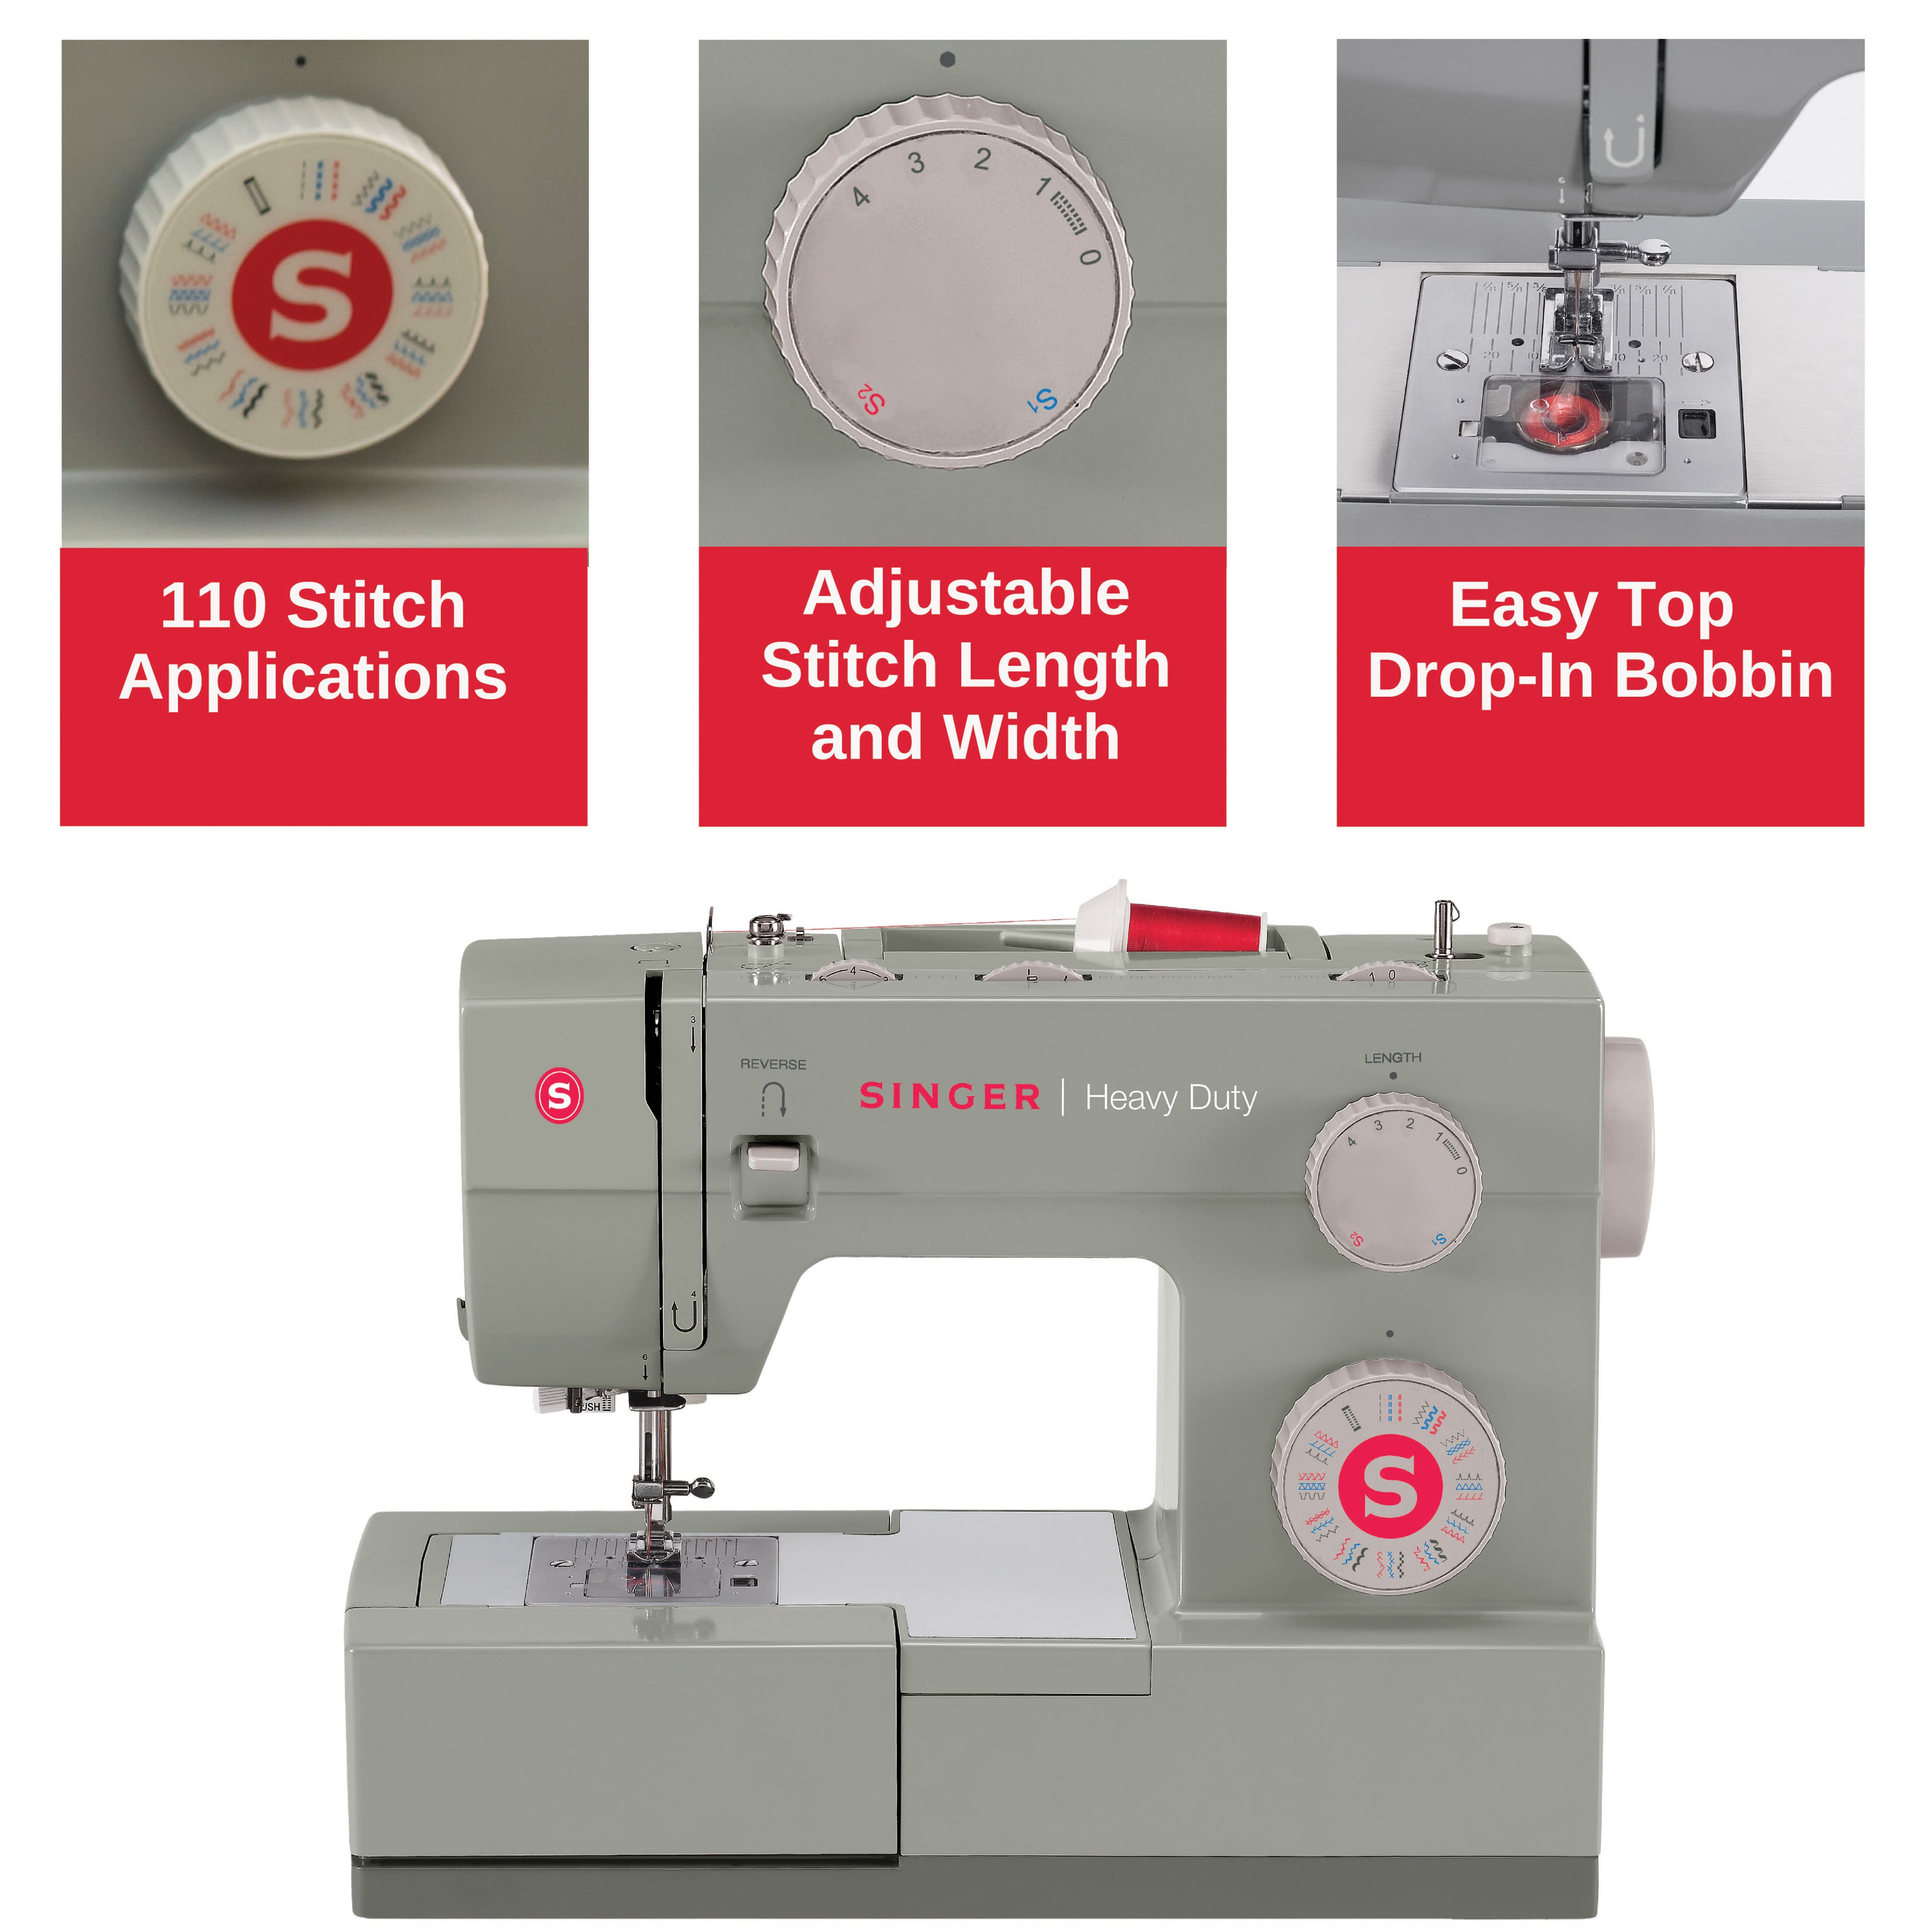 SINGER® HD6700C Heavy Duty Sewing Machine, Michaels in 2023